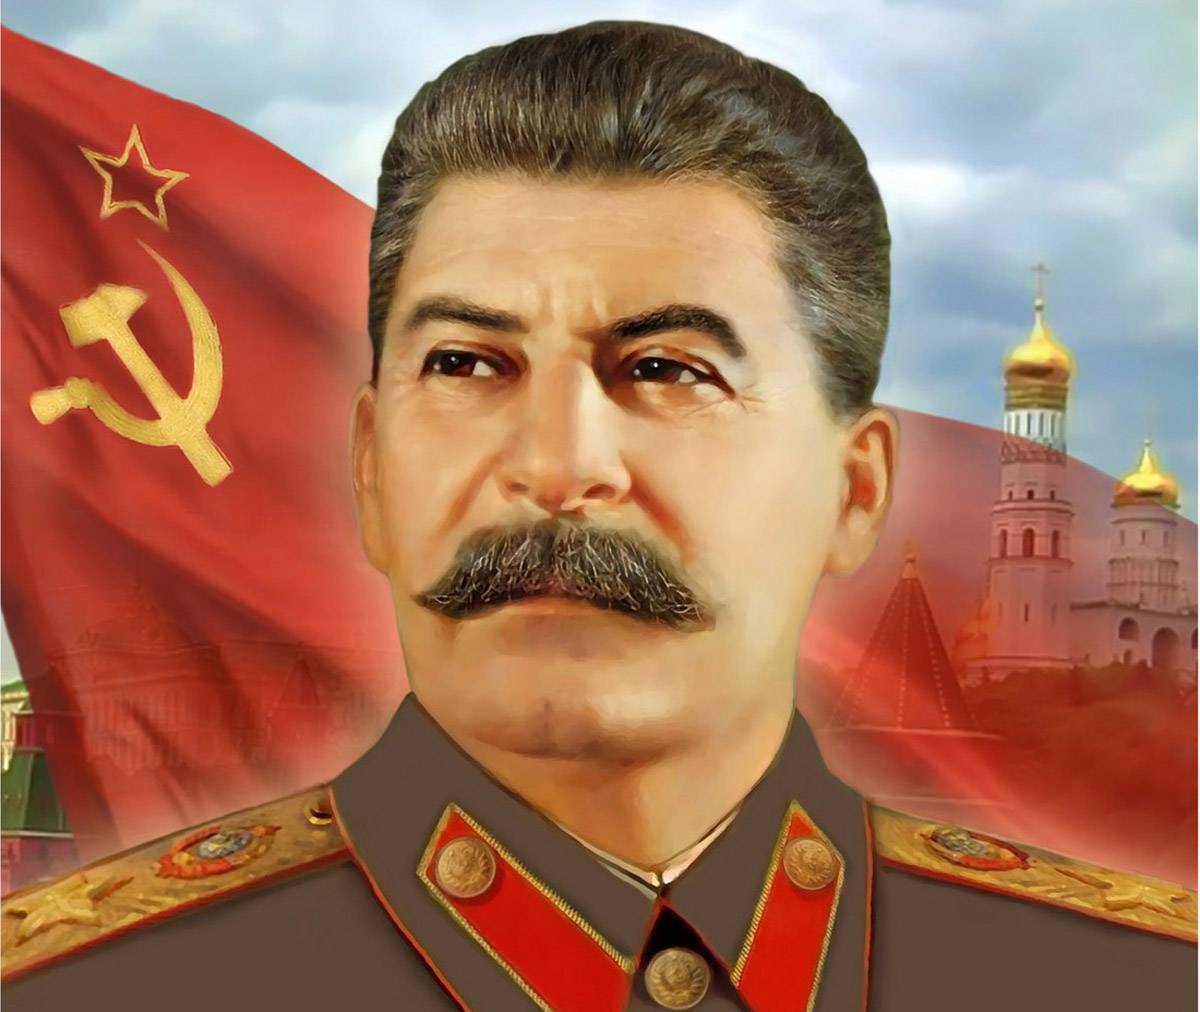 Городу Сталино — памятник Сталину!